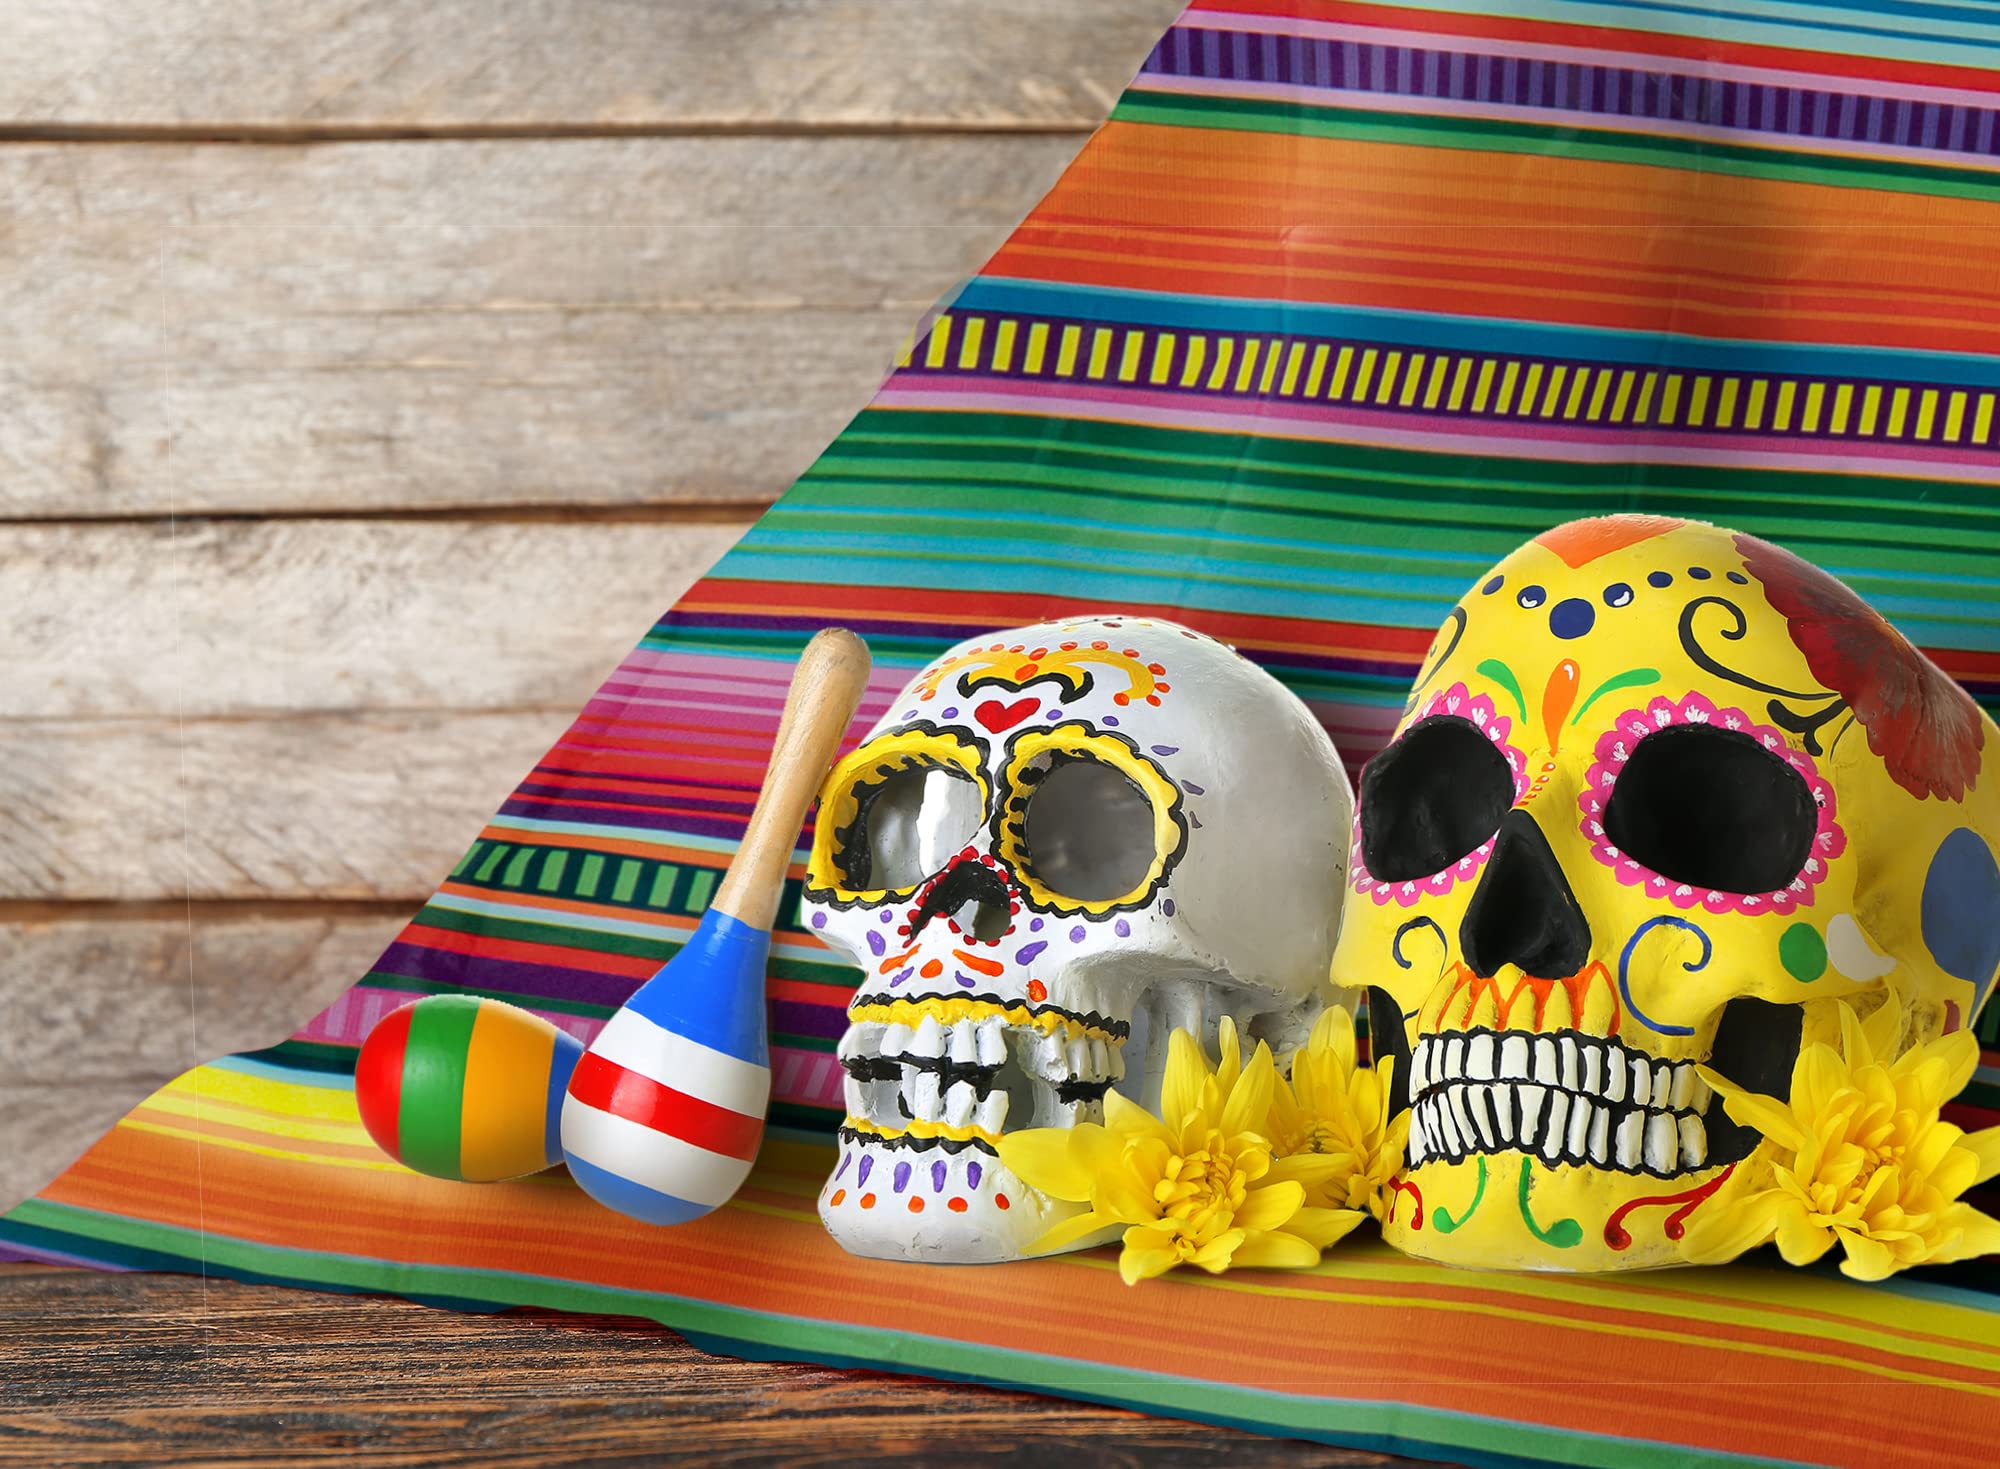 Allenjoy PE Fiesta Backdrop Mexican Color Stripes Banner Cinco de Mayo Party Background